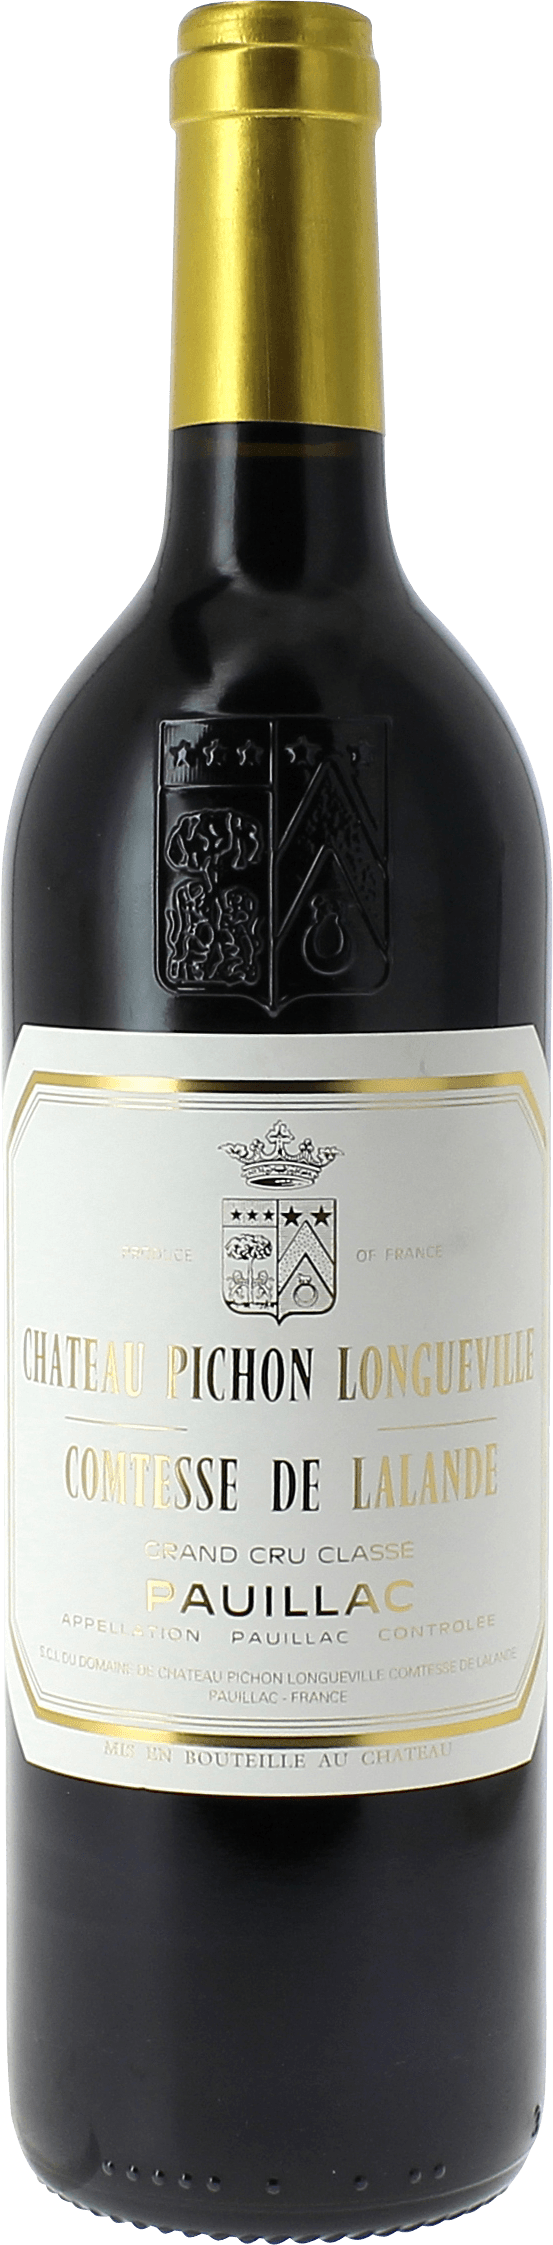 Pichon comtesse de lalande 1990 2me Grand cru class Pauillac, Bordeaux rouge